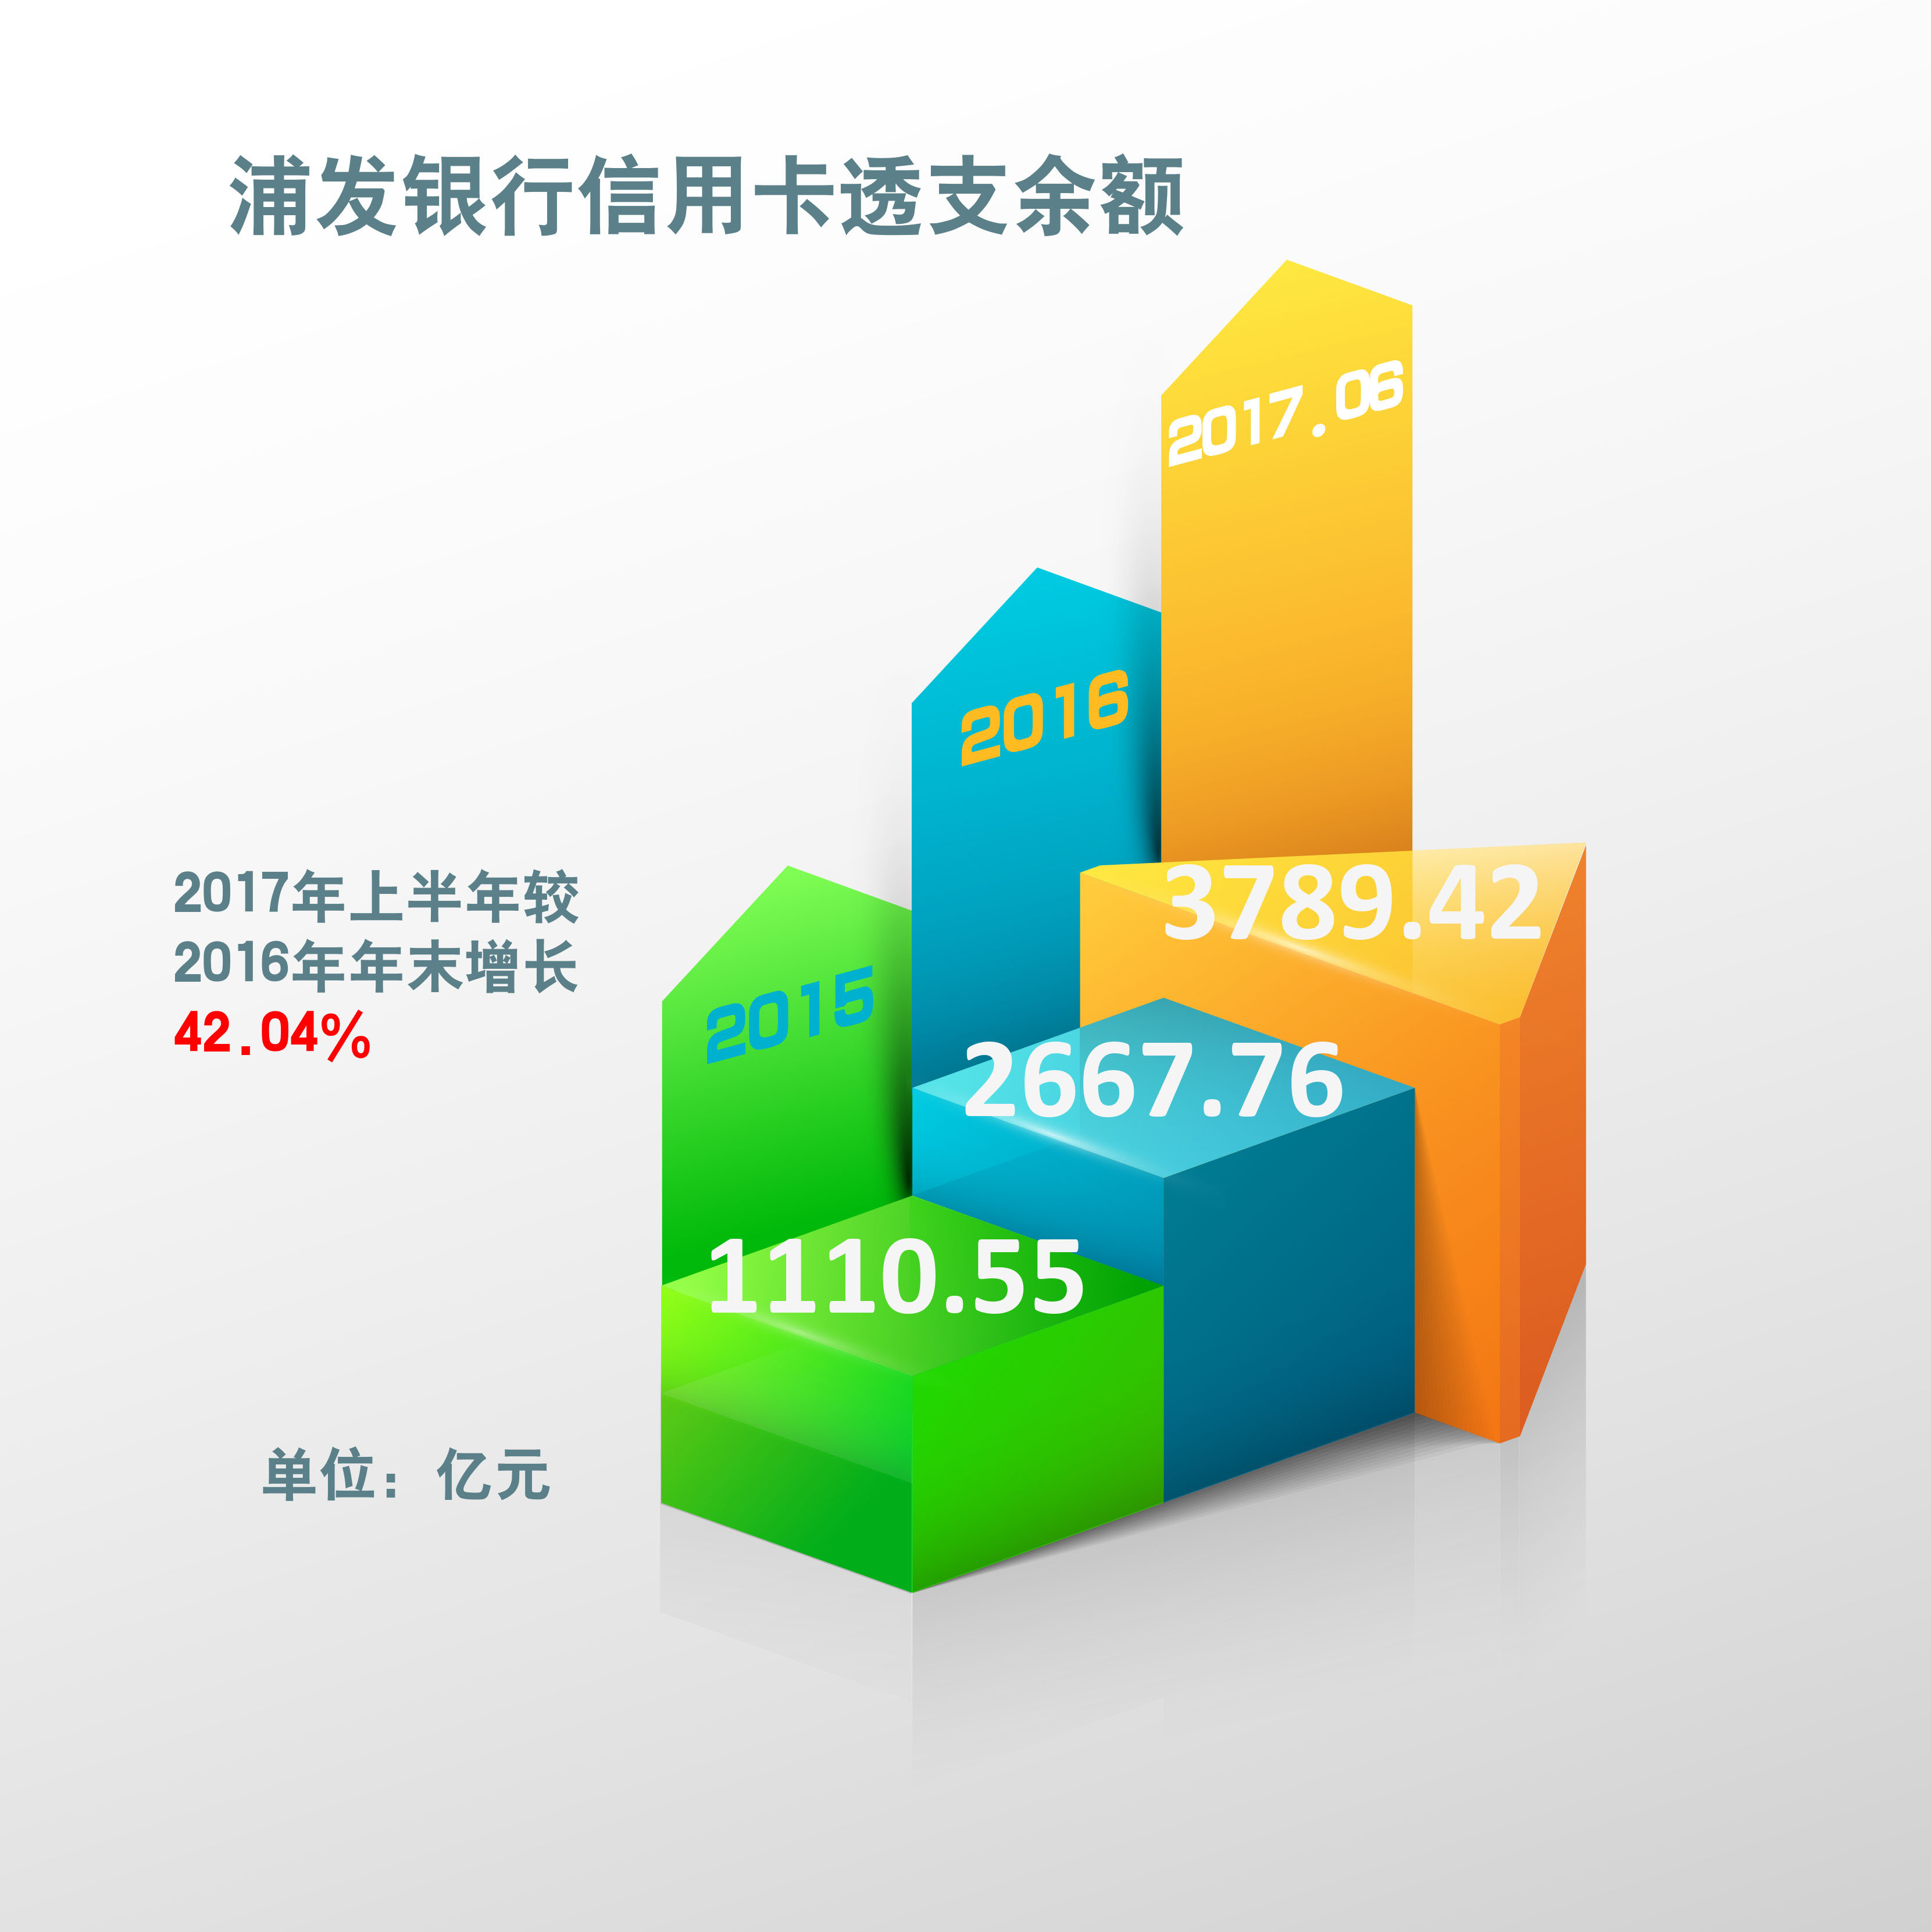 原创：浦发信用卡深耕客户经营 上半年交易额同比增长77.26%